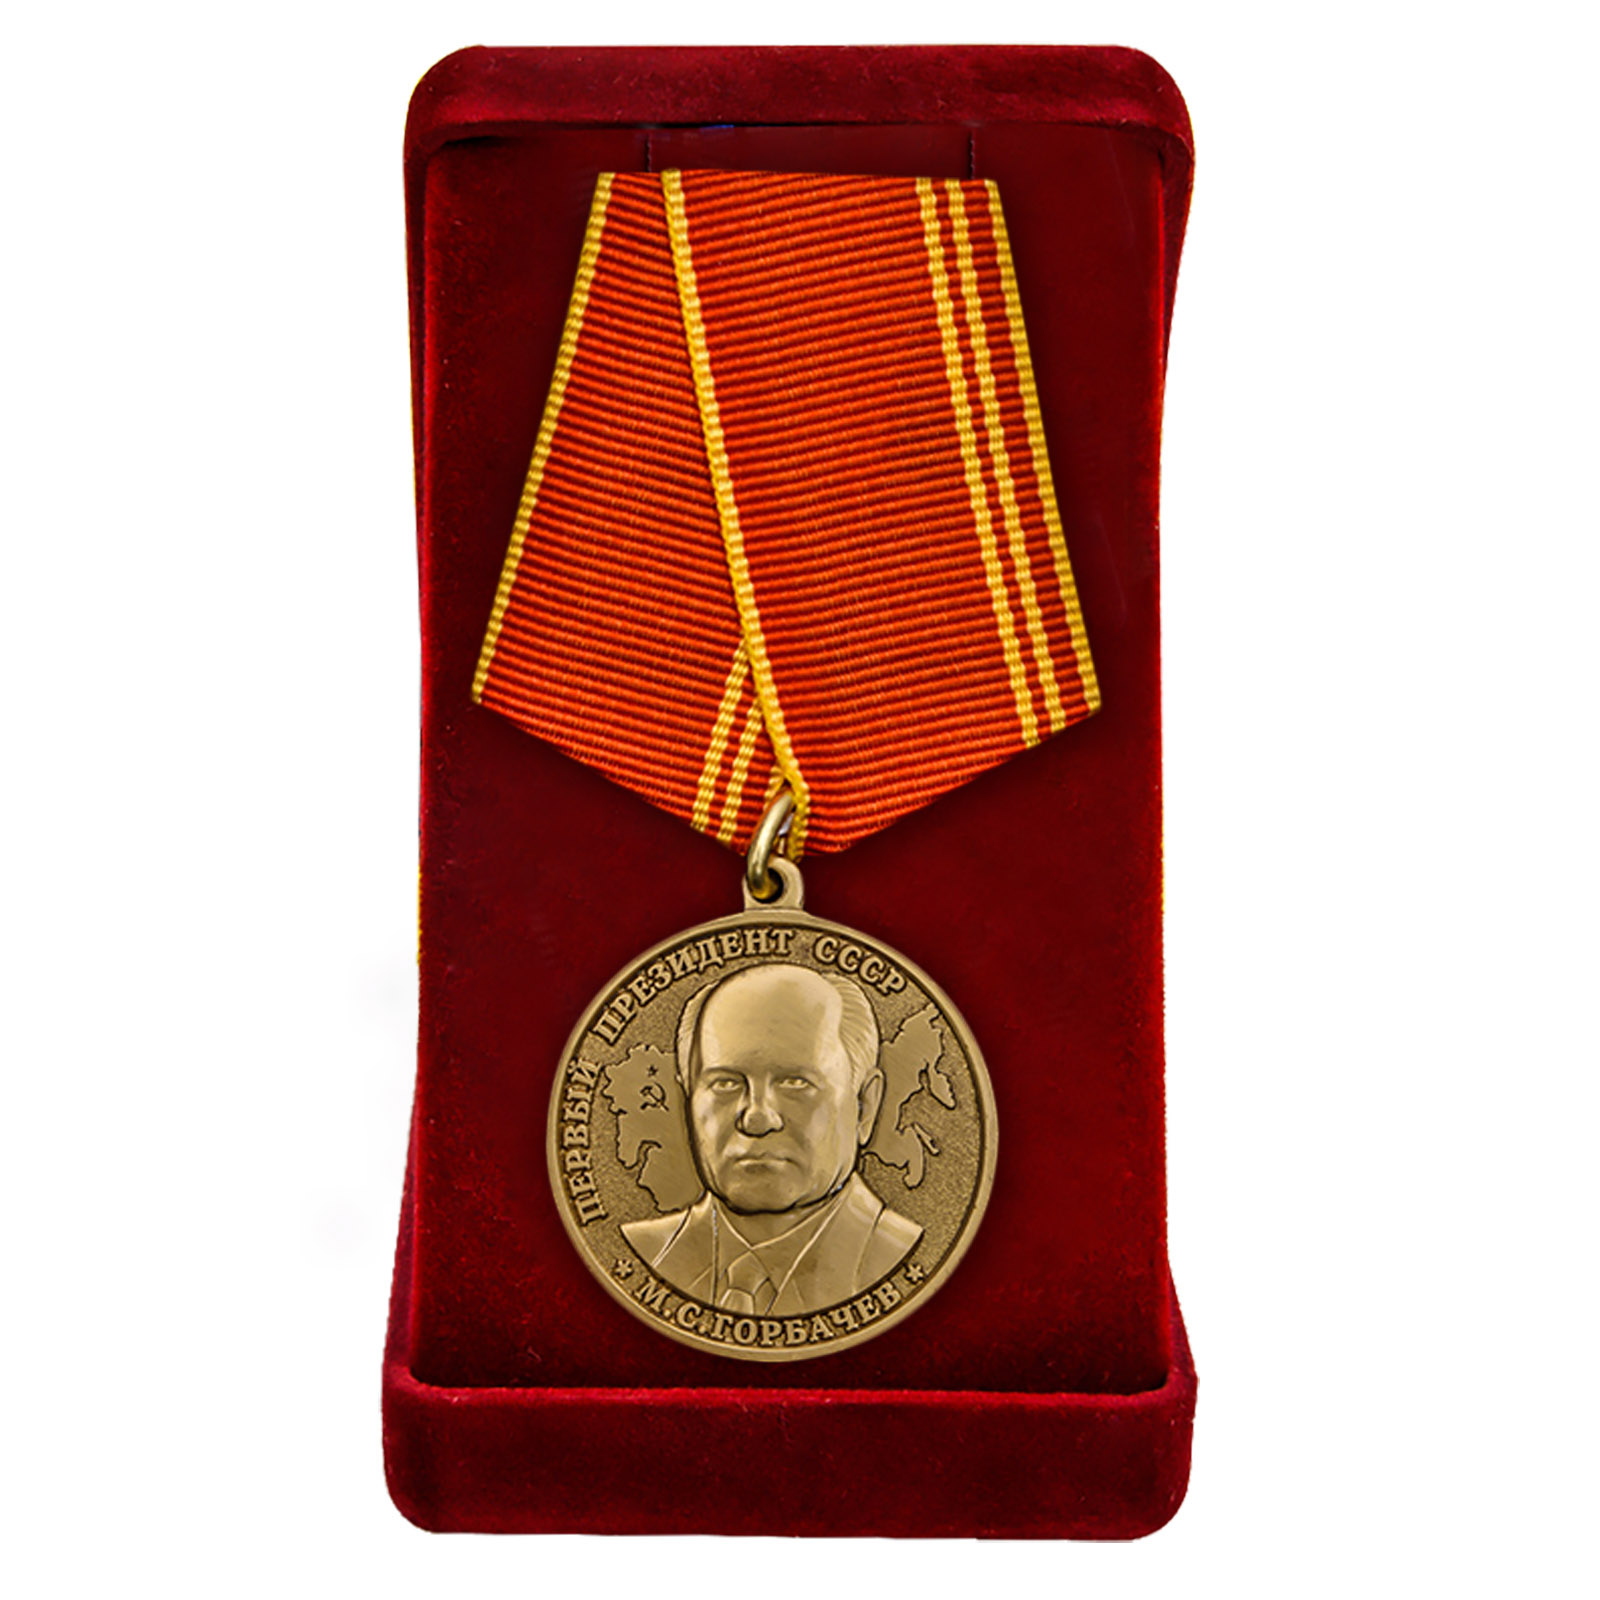 Купить медаль За особые заслуги Президент СССР Горбачев М.С. в подарок